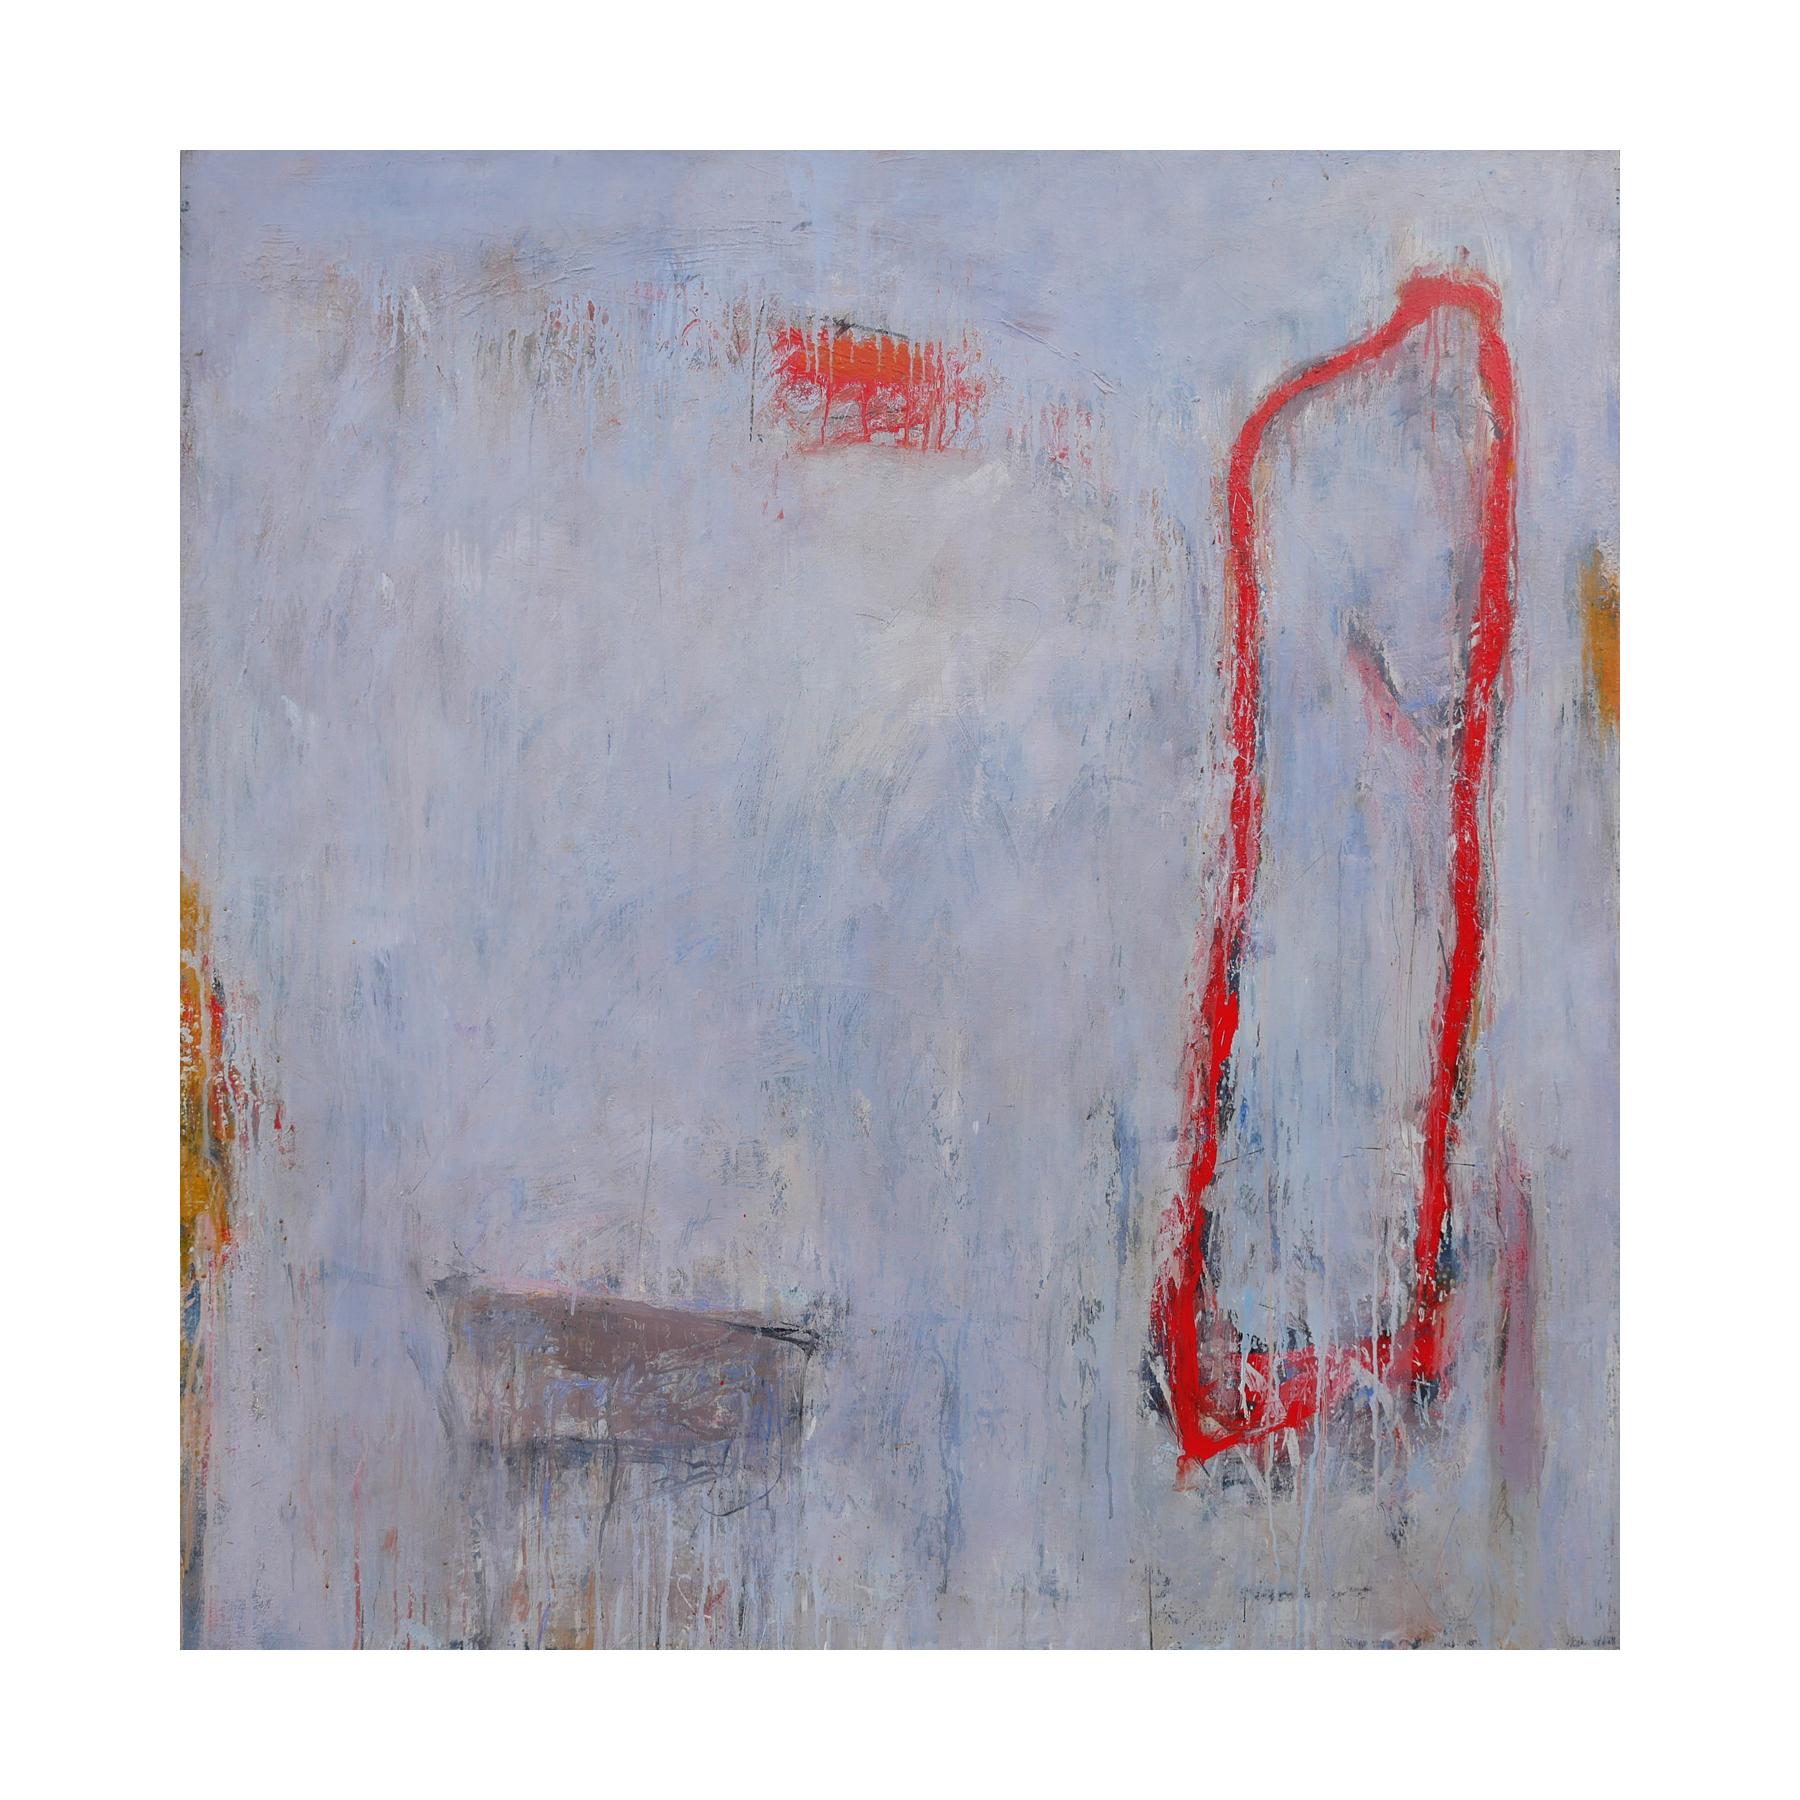 Lila, Grau und Rot getöntes abstraktes zeitgenössisches Gemälde – Painting von Tony Magar